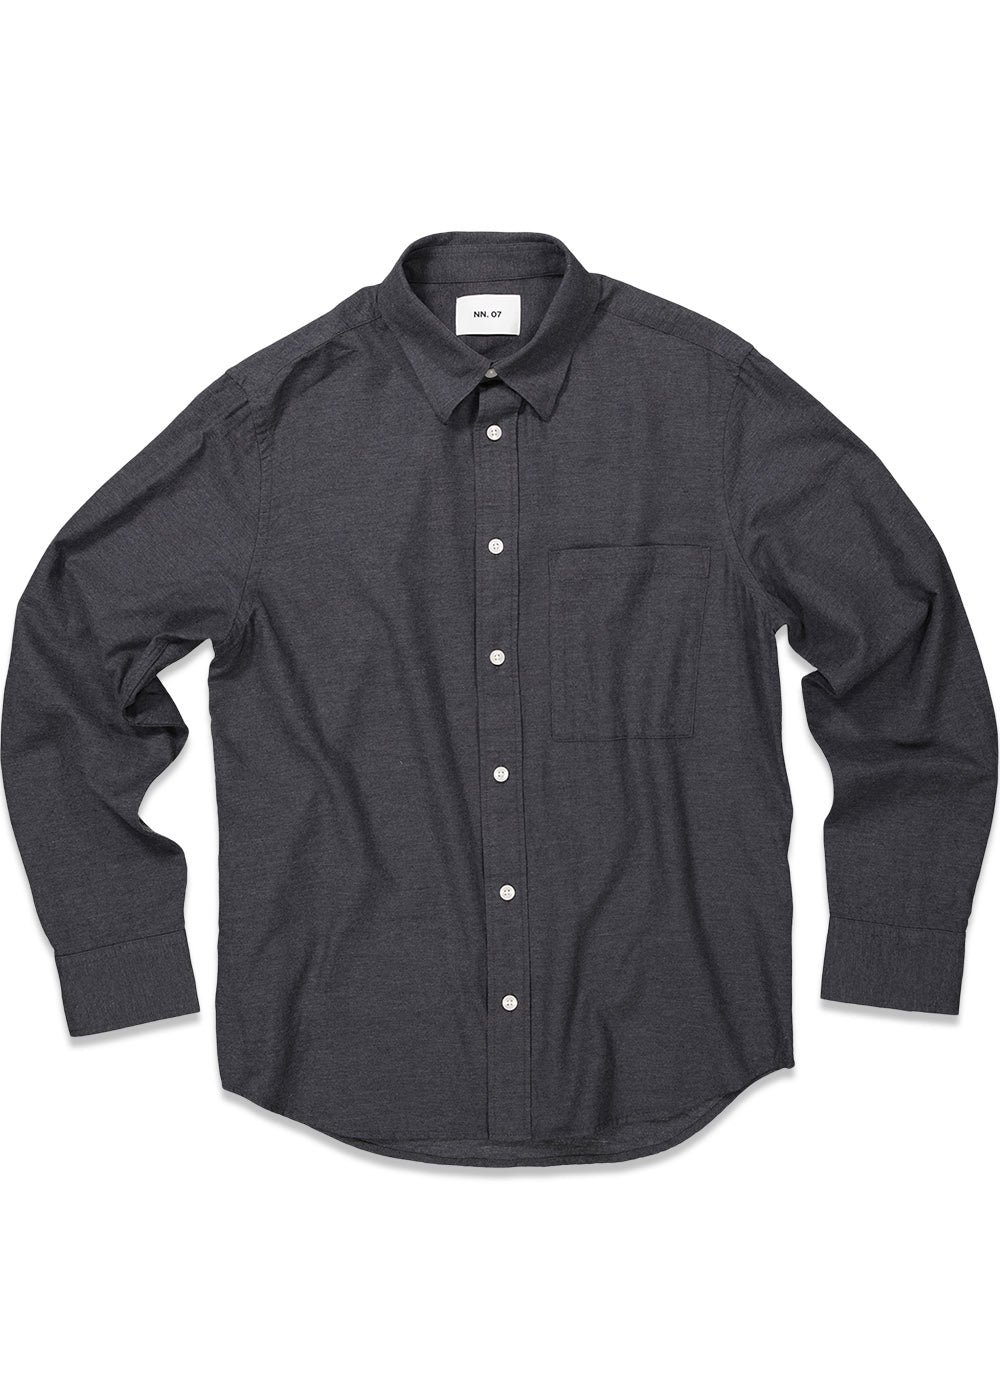 Nn. 07s Cohen Shirt 5972 - Dark Grey. Køb shirts her.